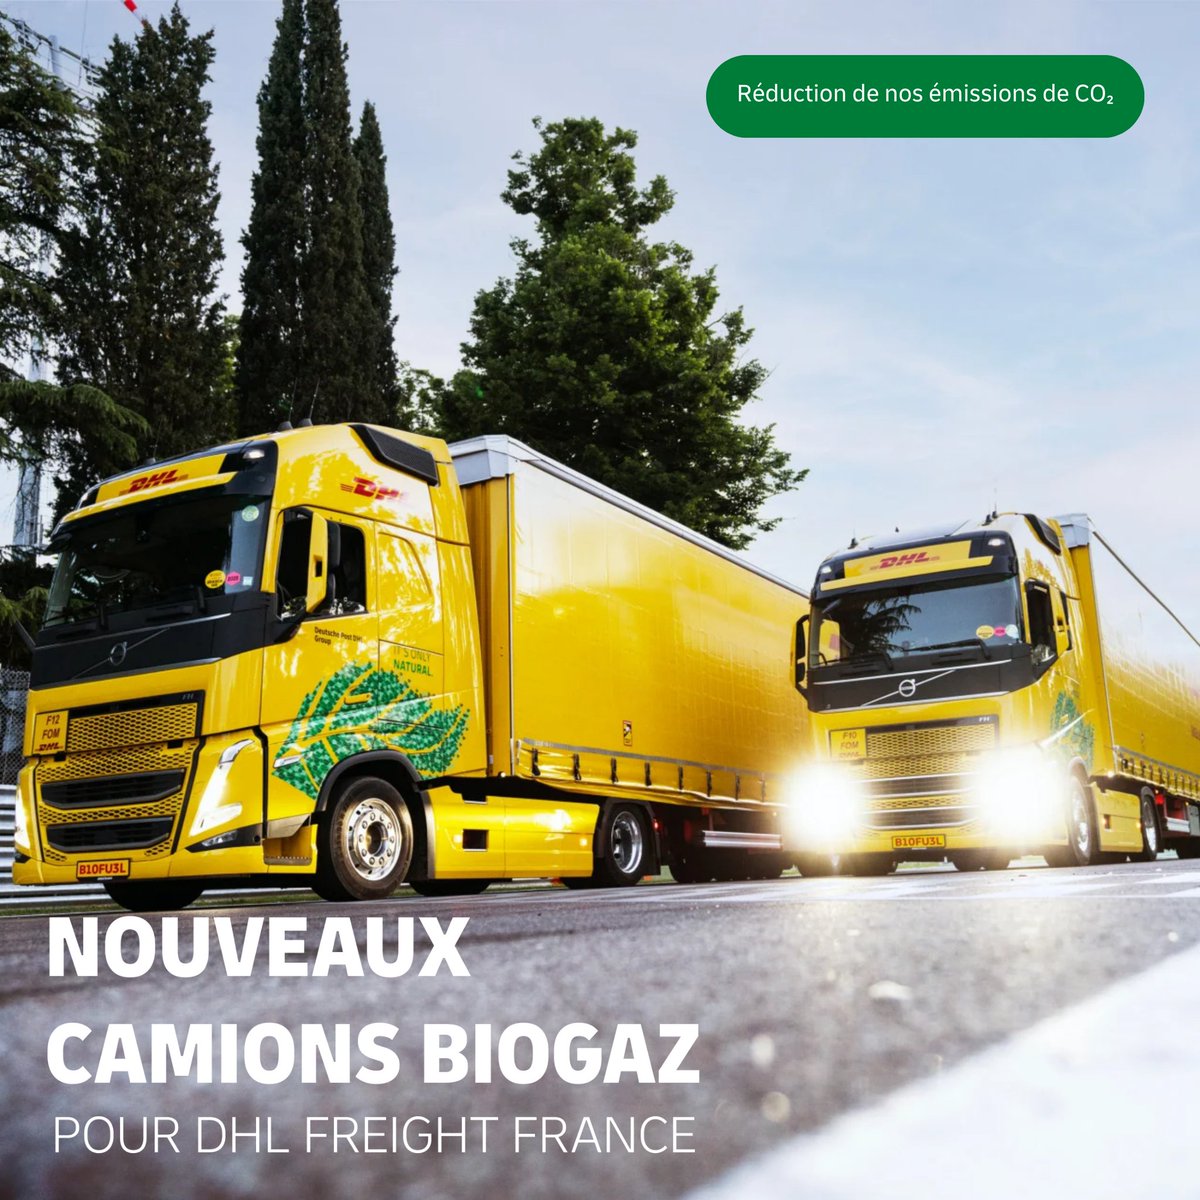 Deux nouveaux camions biogaz rejoignent DHL Freight France 🍃🚛 Ces deux nouveaux camions biogaz démontrent l'engagement que nous avons pris depuis 2019 pour réduire nos émissions de CO2 de 30 % d'ici 2030. #camions #green #durabilite #ecologie #transport #freight #france